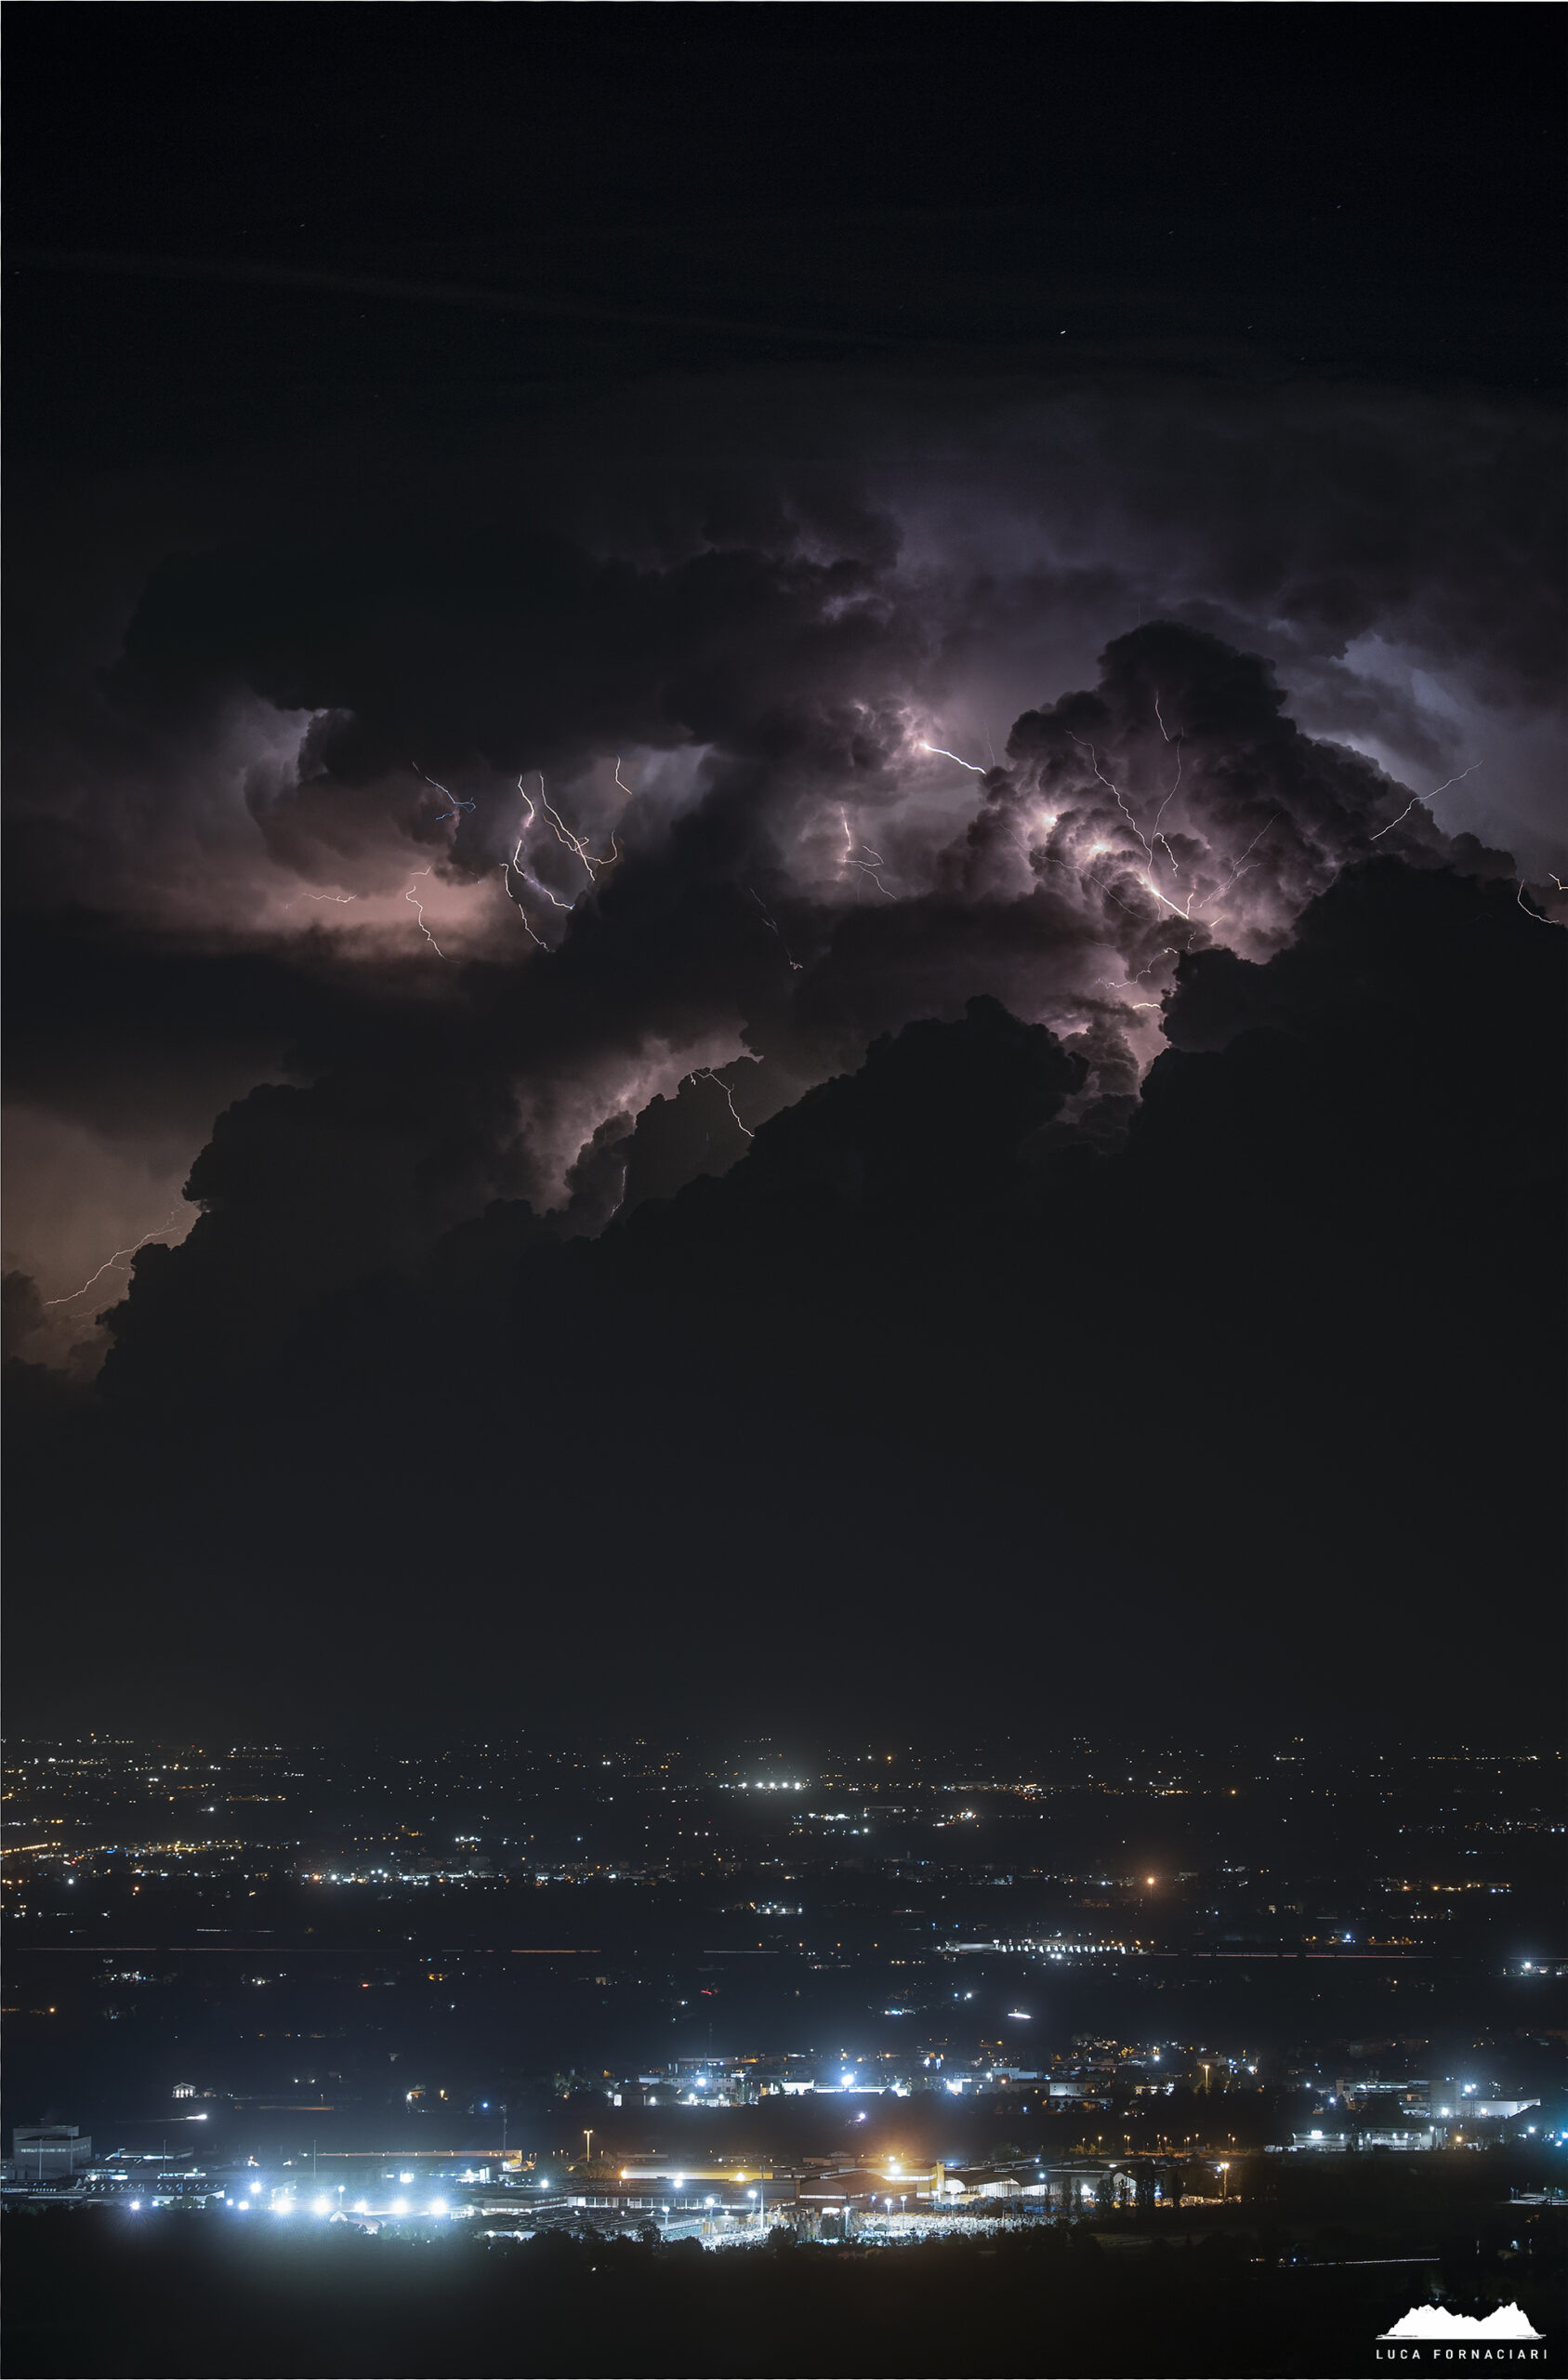 Fotografia notturna a fulmini e temporali